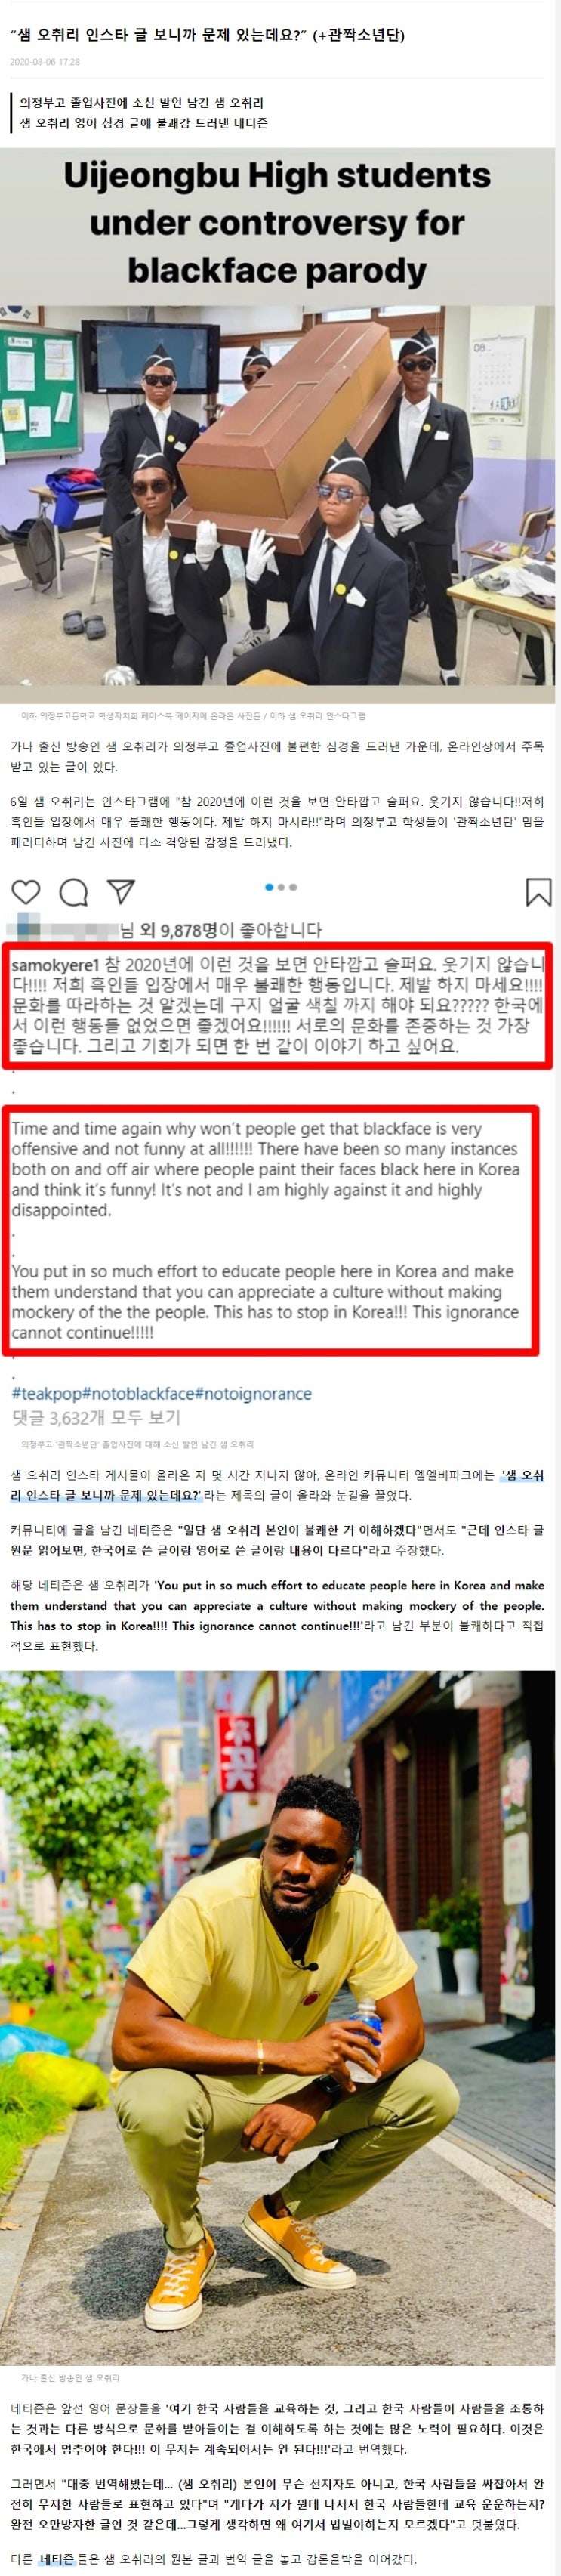 샘 오취리 의정부 관짝소년단 논란과 인스타그램 성희롱 댓글 동조와 동양인 비하 논란에 인스타 폐쇄 후 대한외국인 하차?